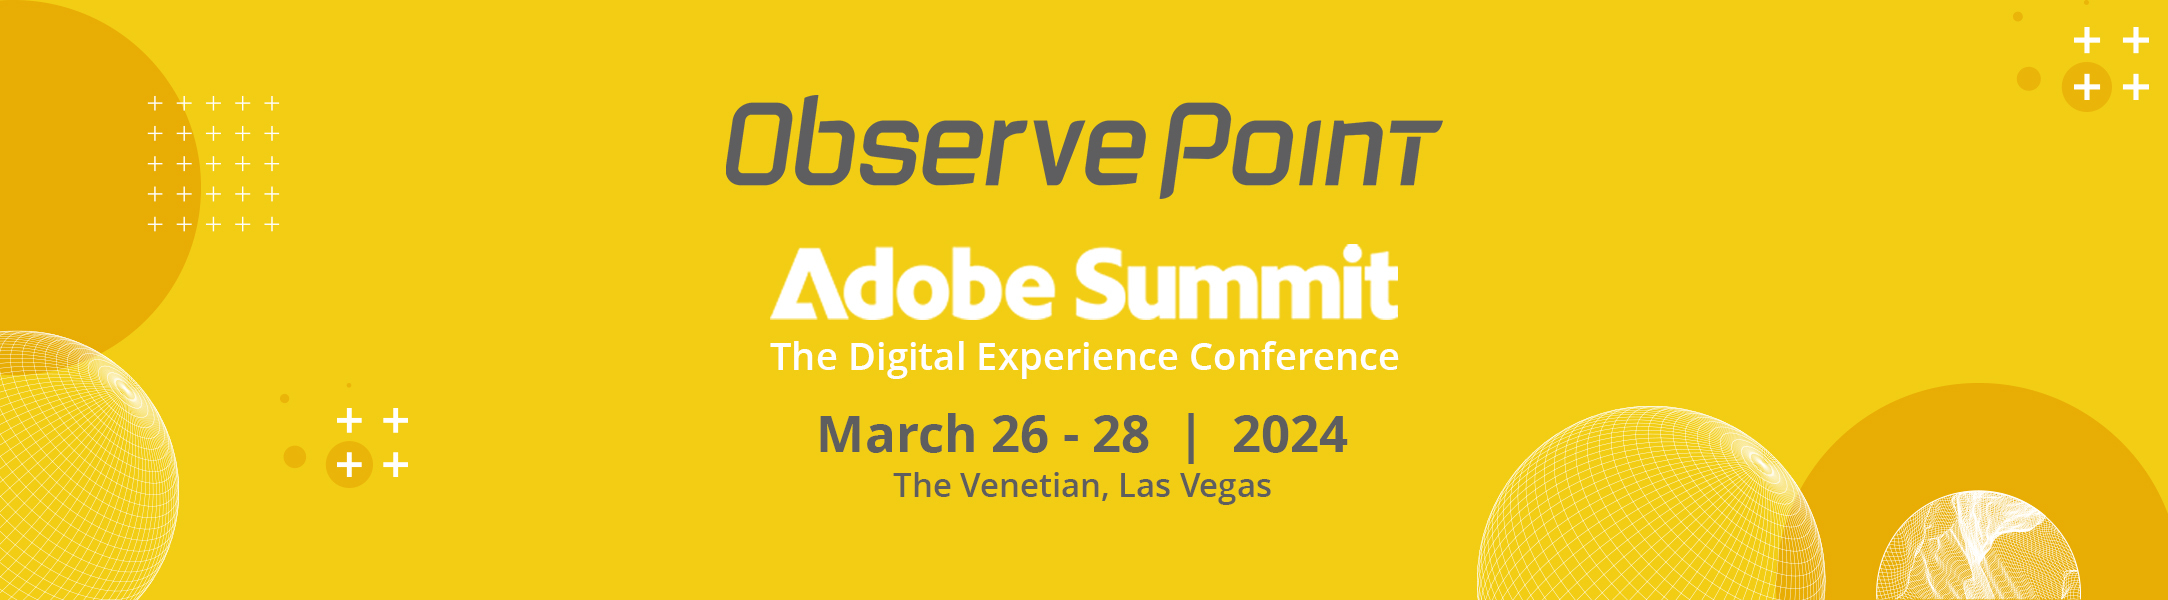 Web Banner Adobe Summit 2024 v2